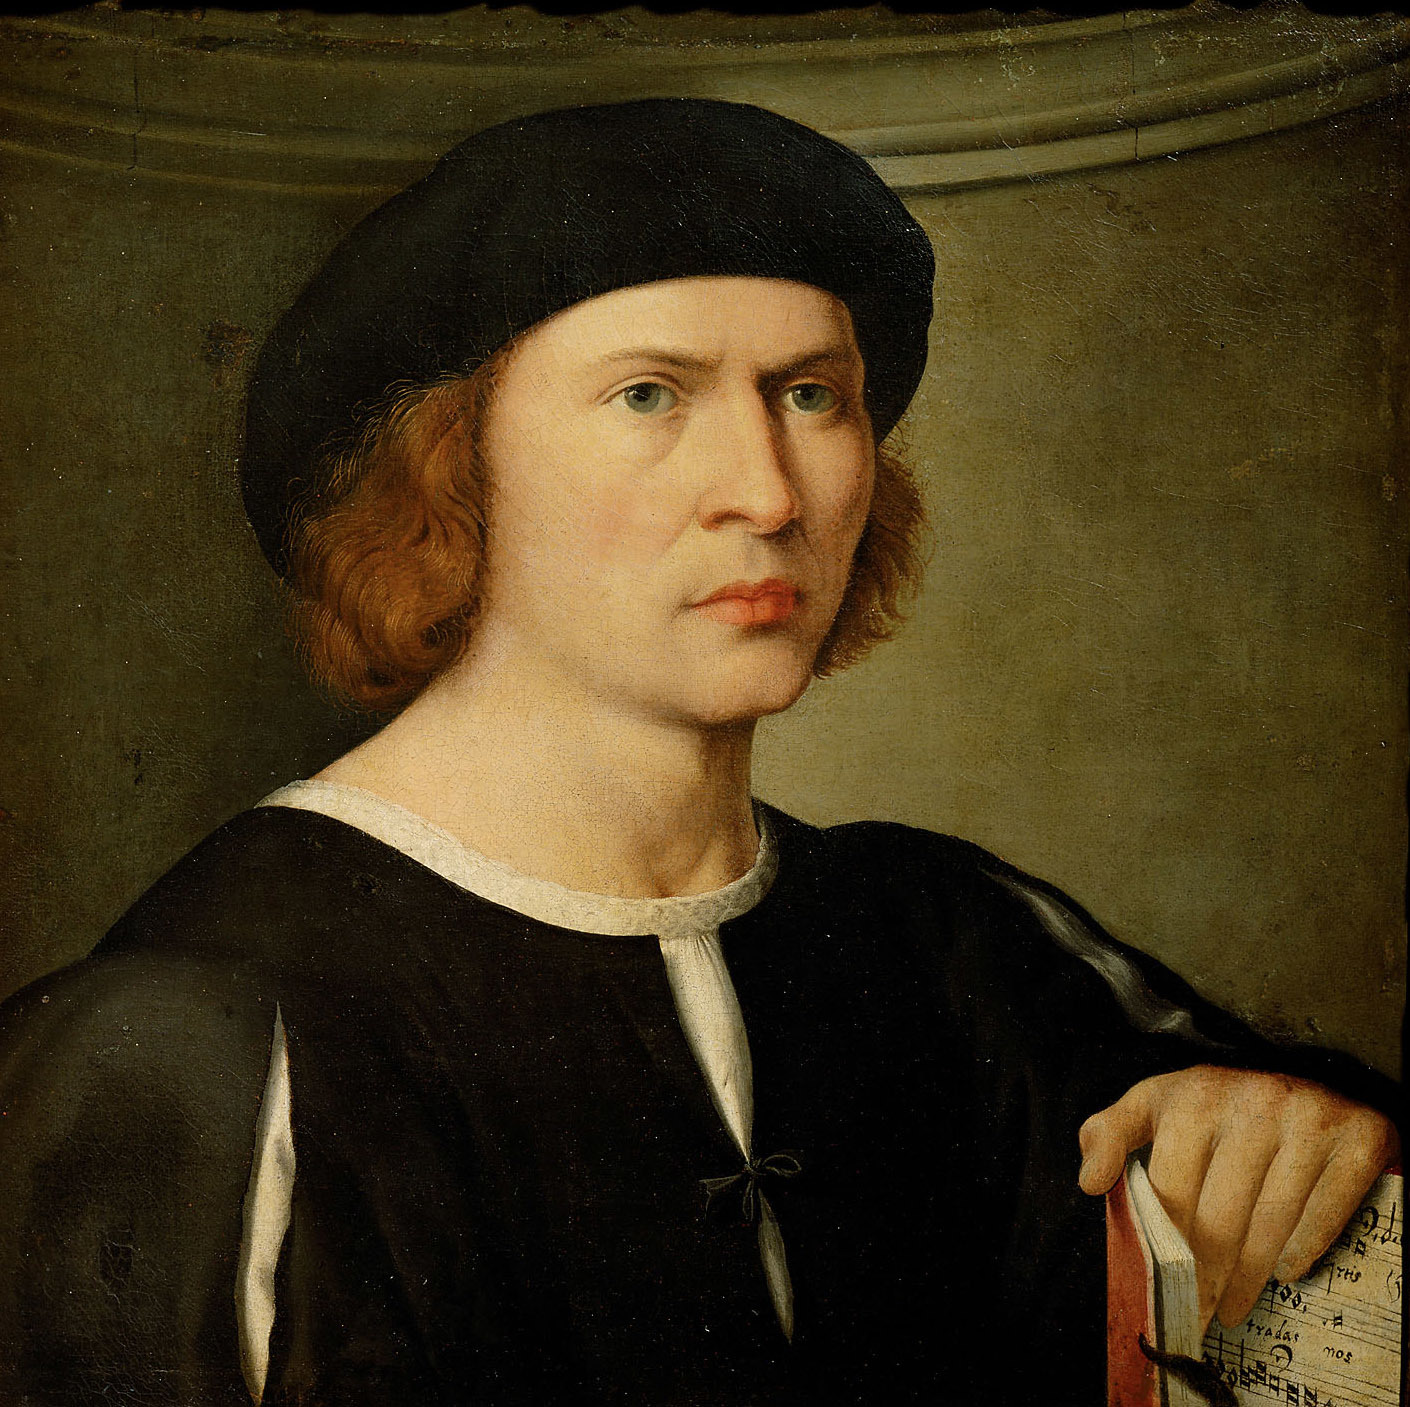 Spencer Alley: Giovanni Antonio de Sacchis (Il Pordenone) - ca. 1484-1539